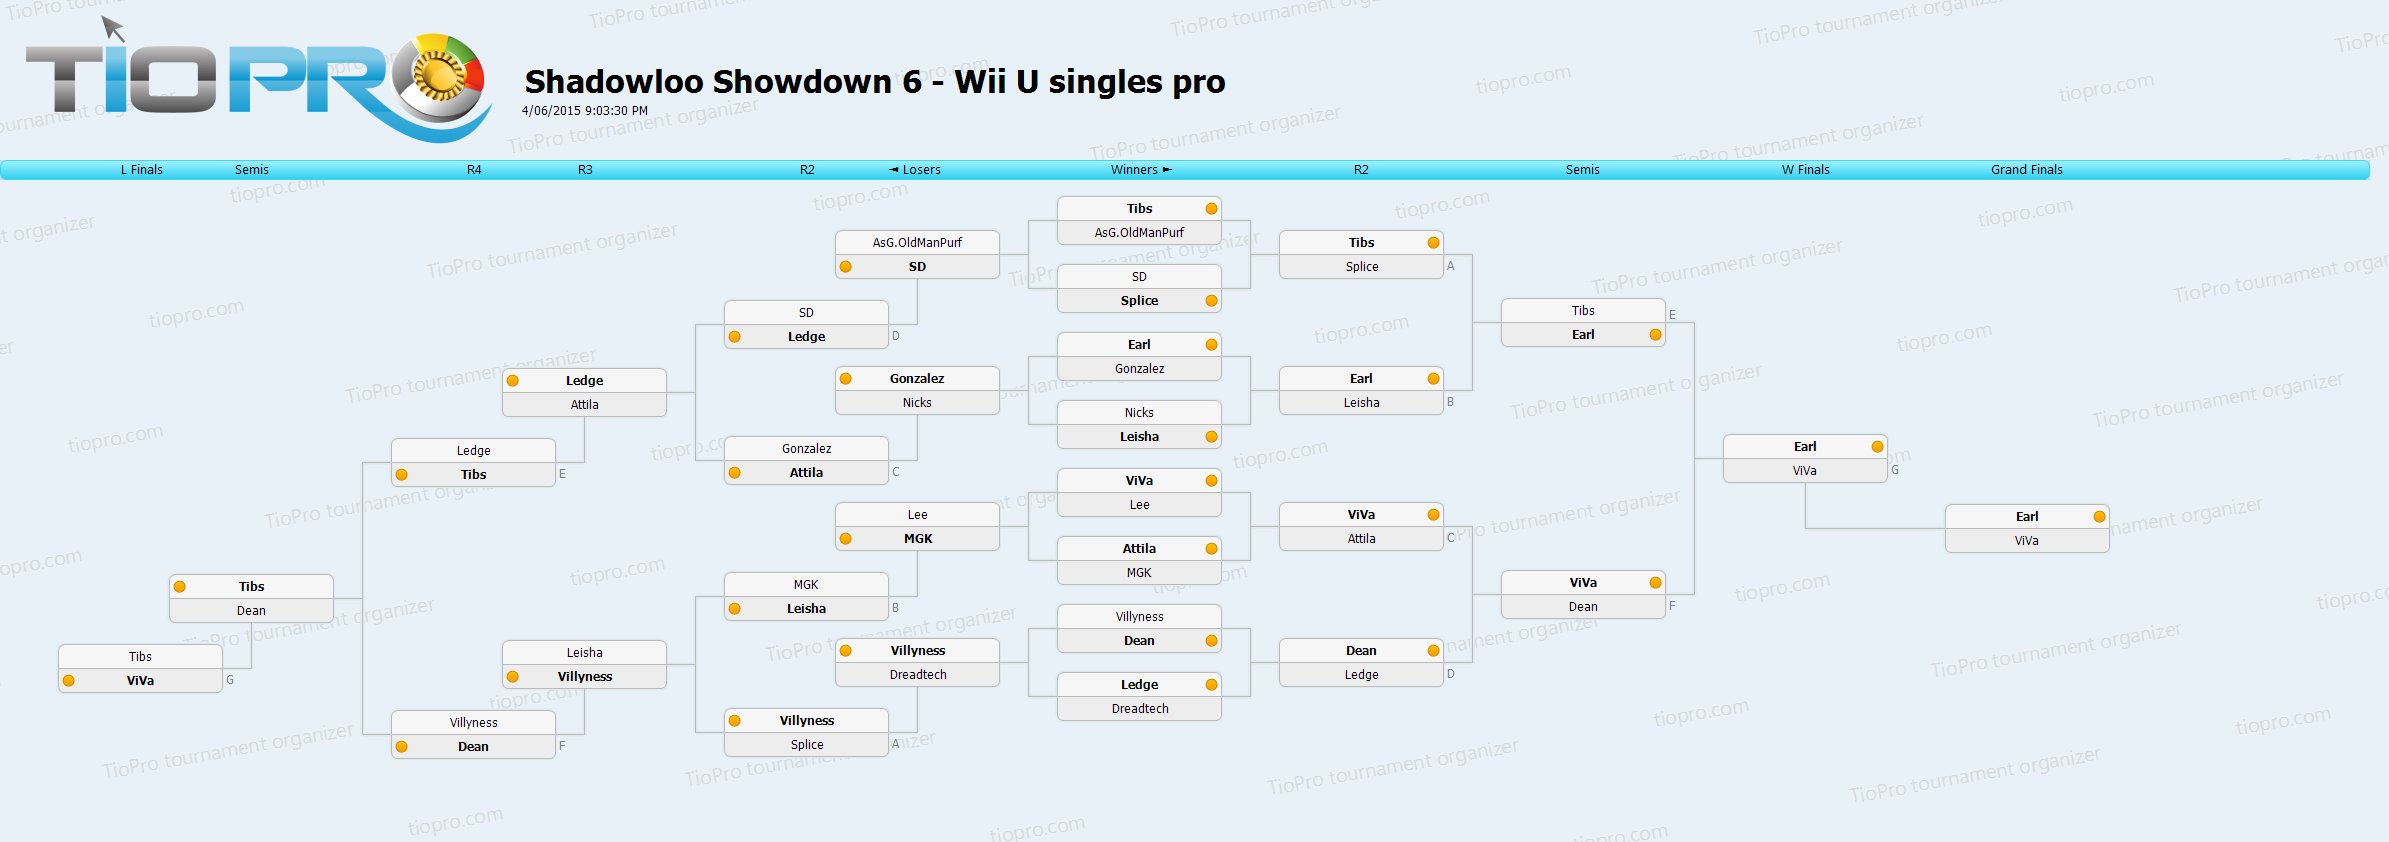 Shadowloo Showdown 6 Top 16 - Wii U singles pro bracket